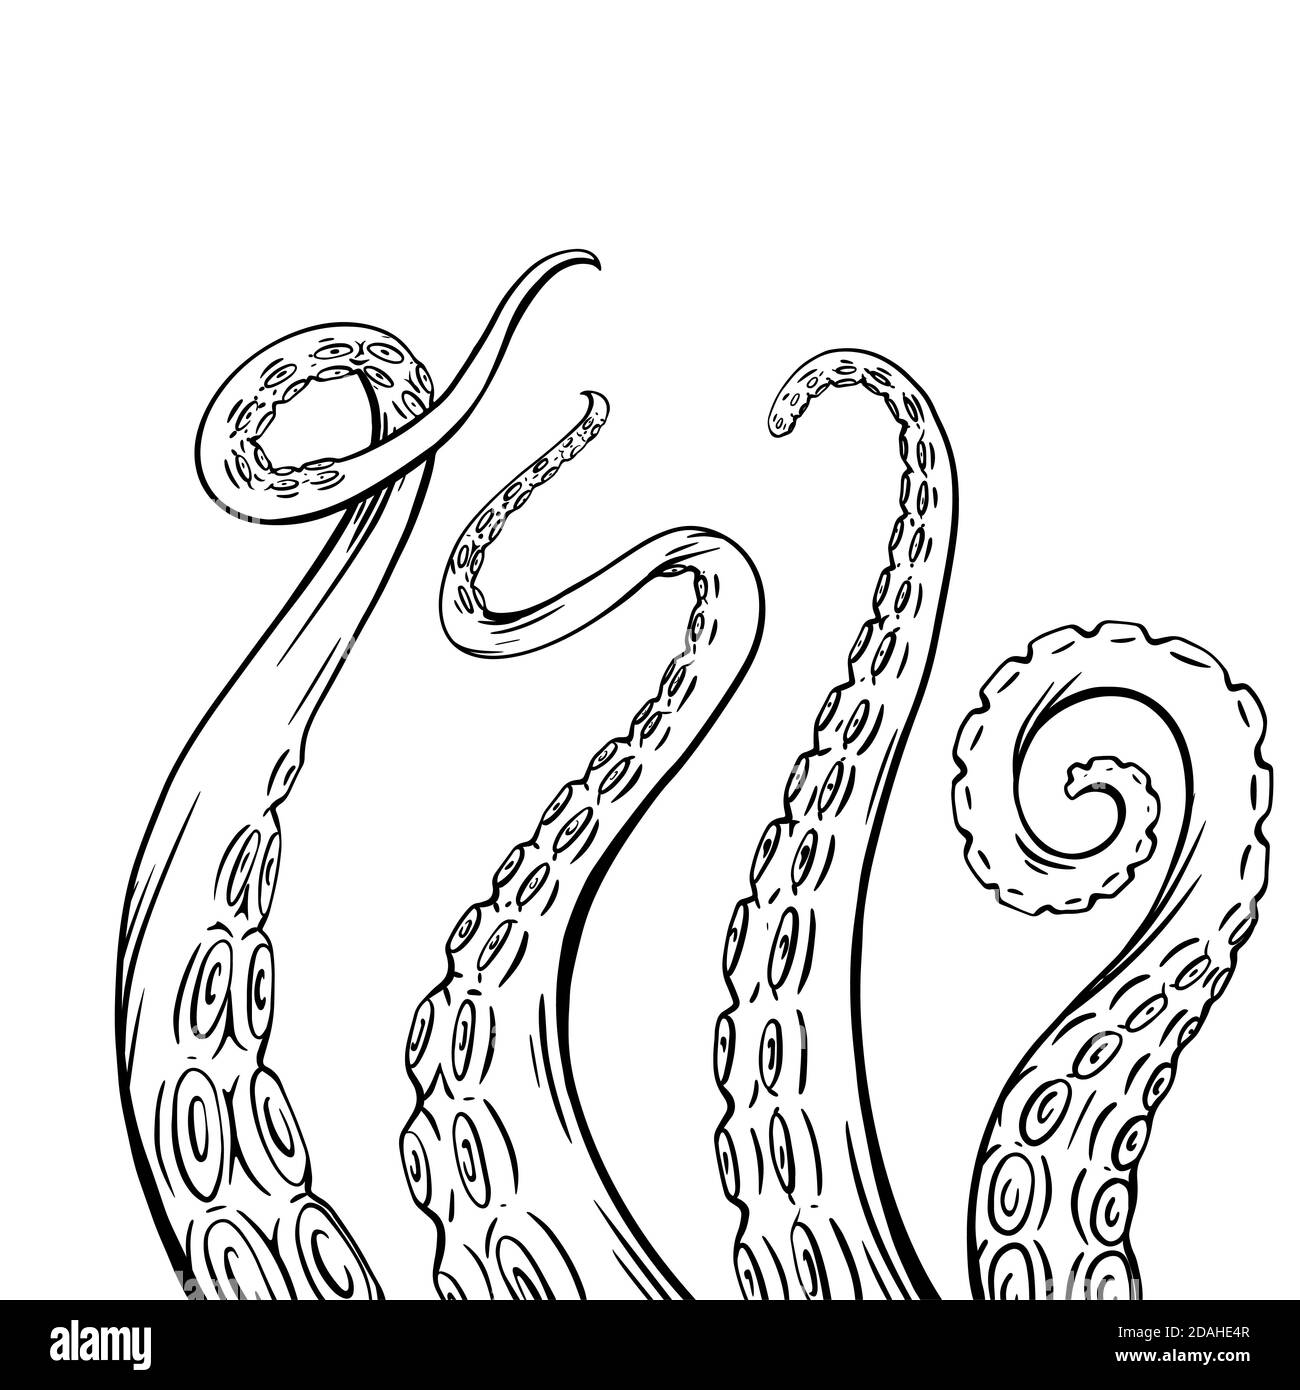 Set di bozzetti in bianco e nero con tentacoli in polpo. Membra creepy di abitanti marini. Oggetto vettoriale per loghi, tatuaggi, carte e il tuo disegno. Illustrazione Vettoriale